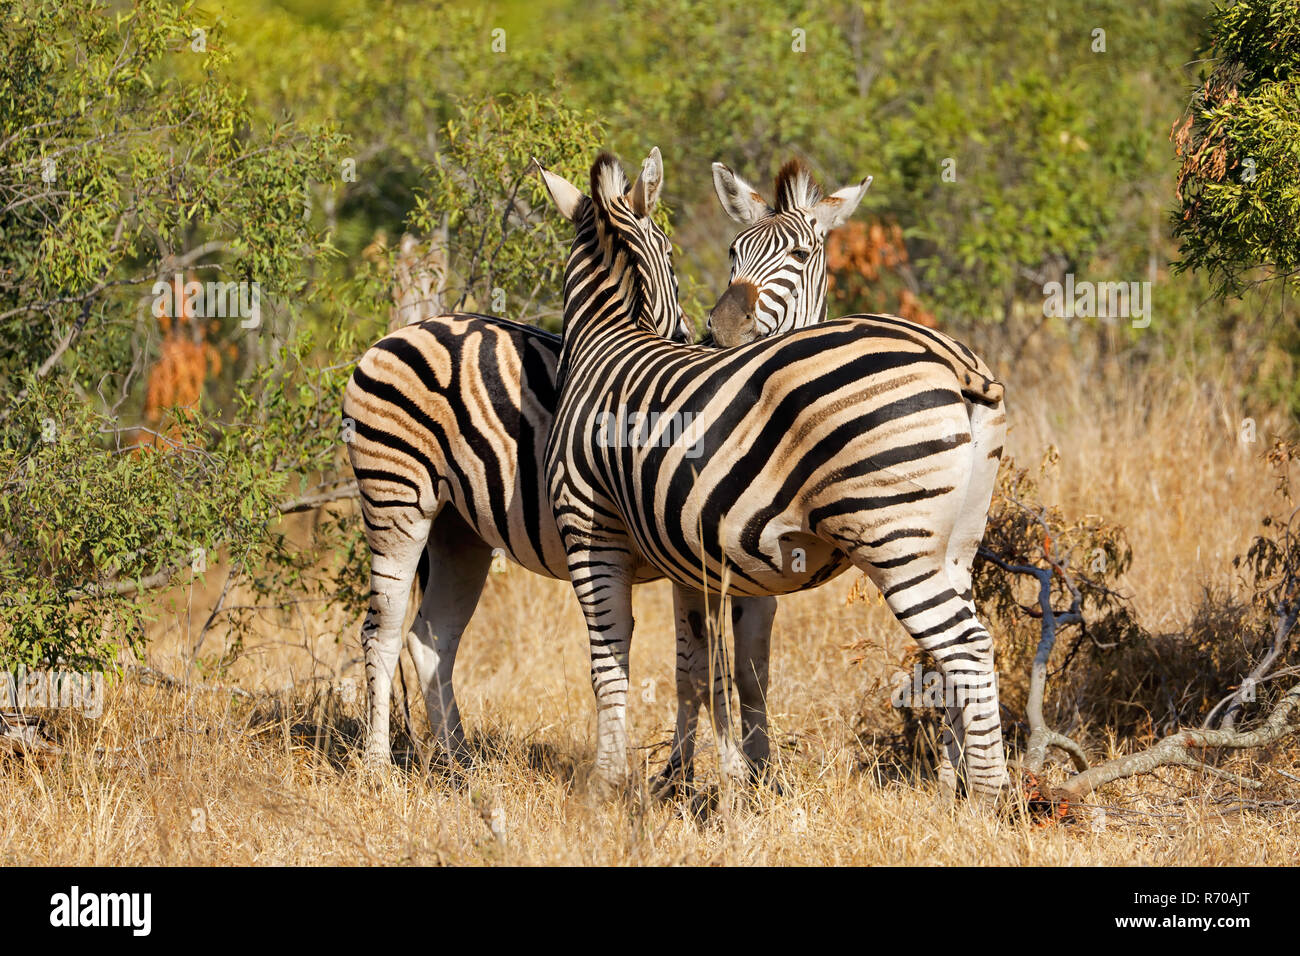 Plains zebras in natural habitat Stock Photo